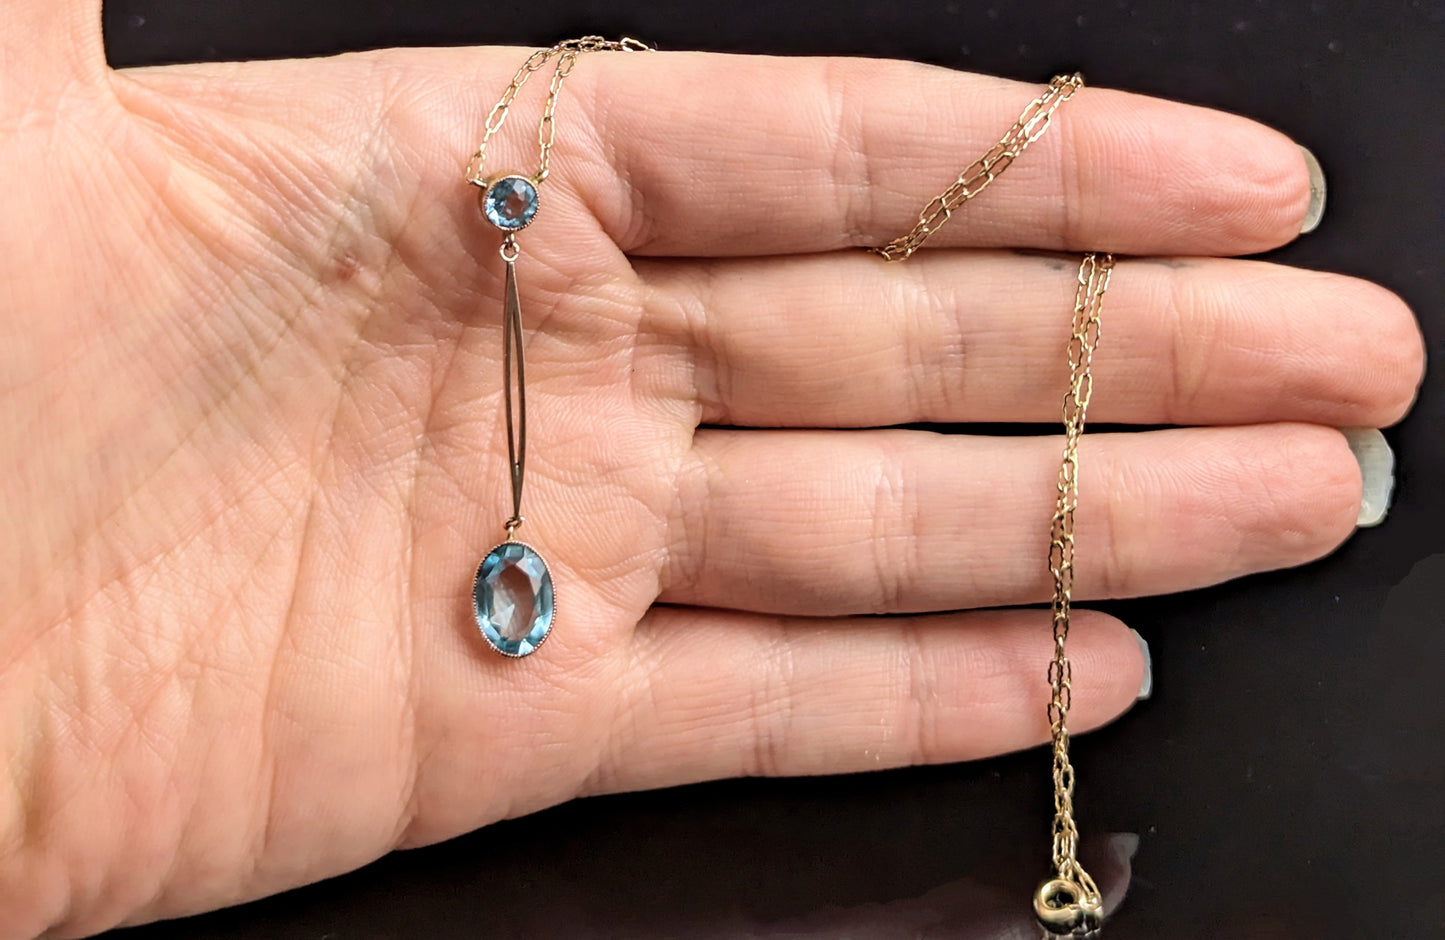 Antique Art Deco drop pendant, 9ct gold necklace, Blue paste